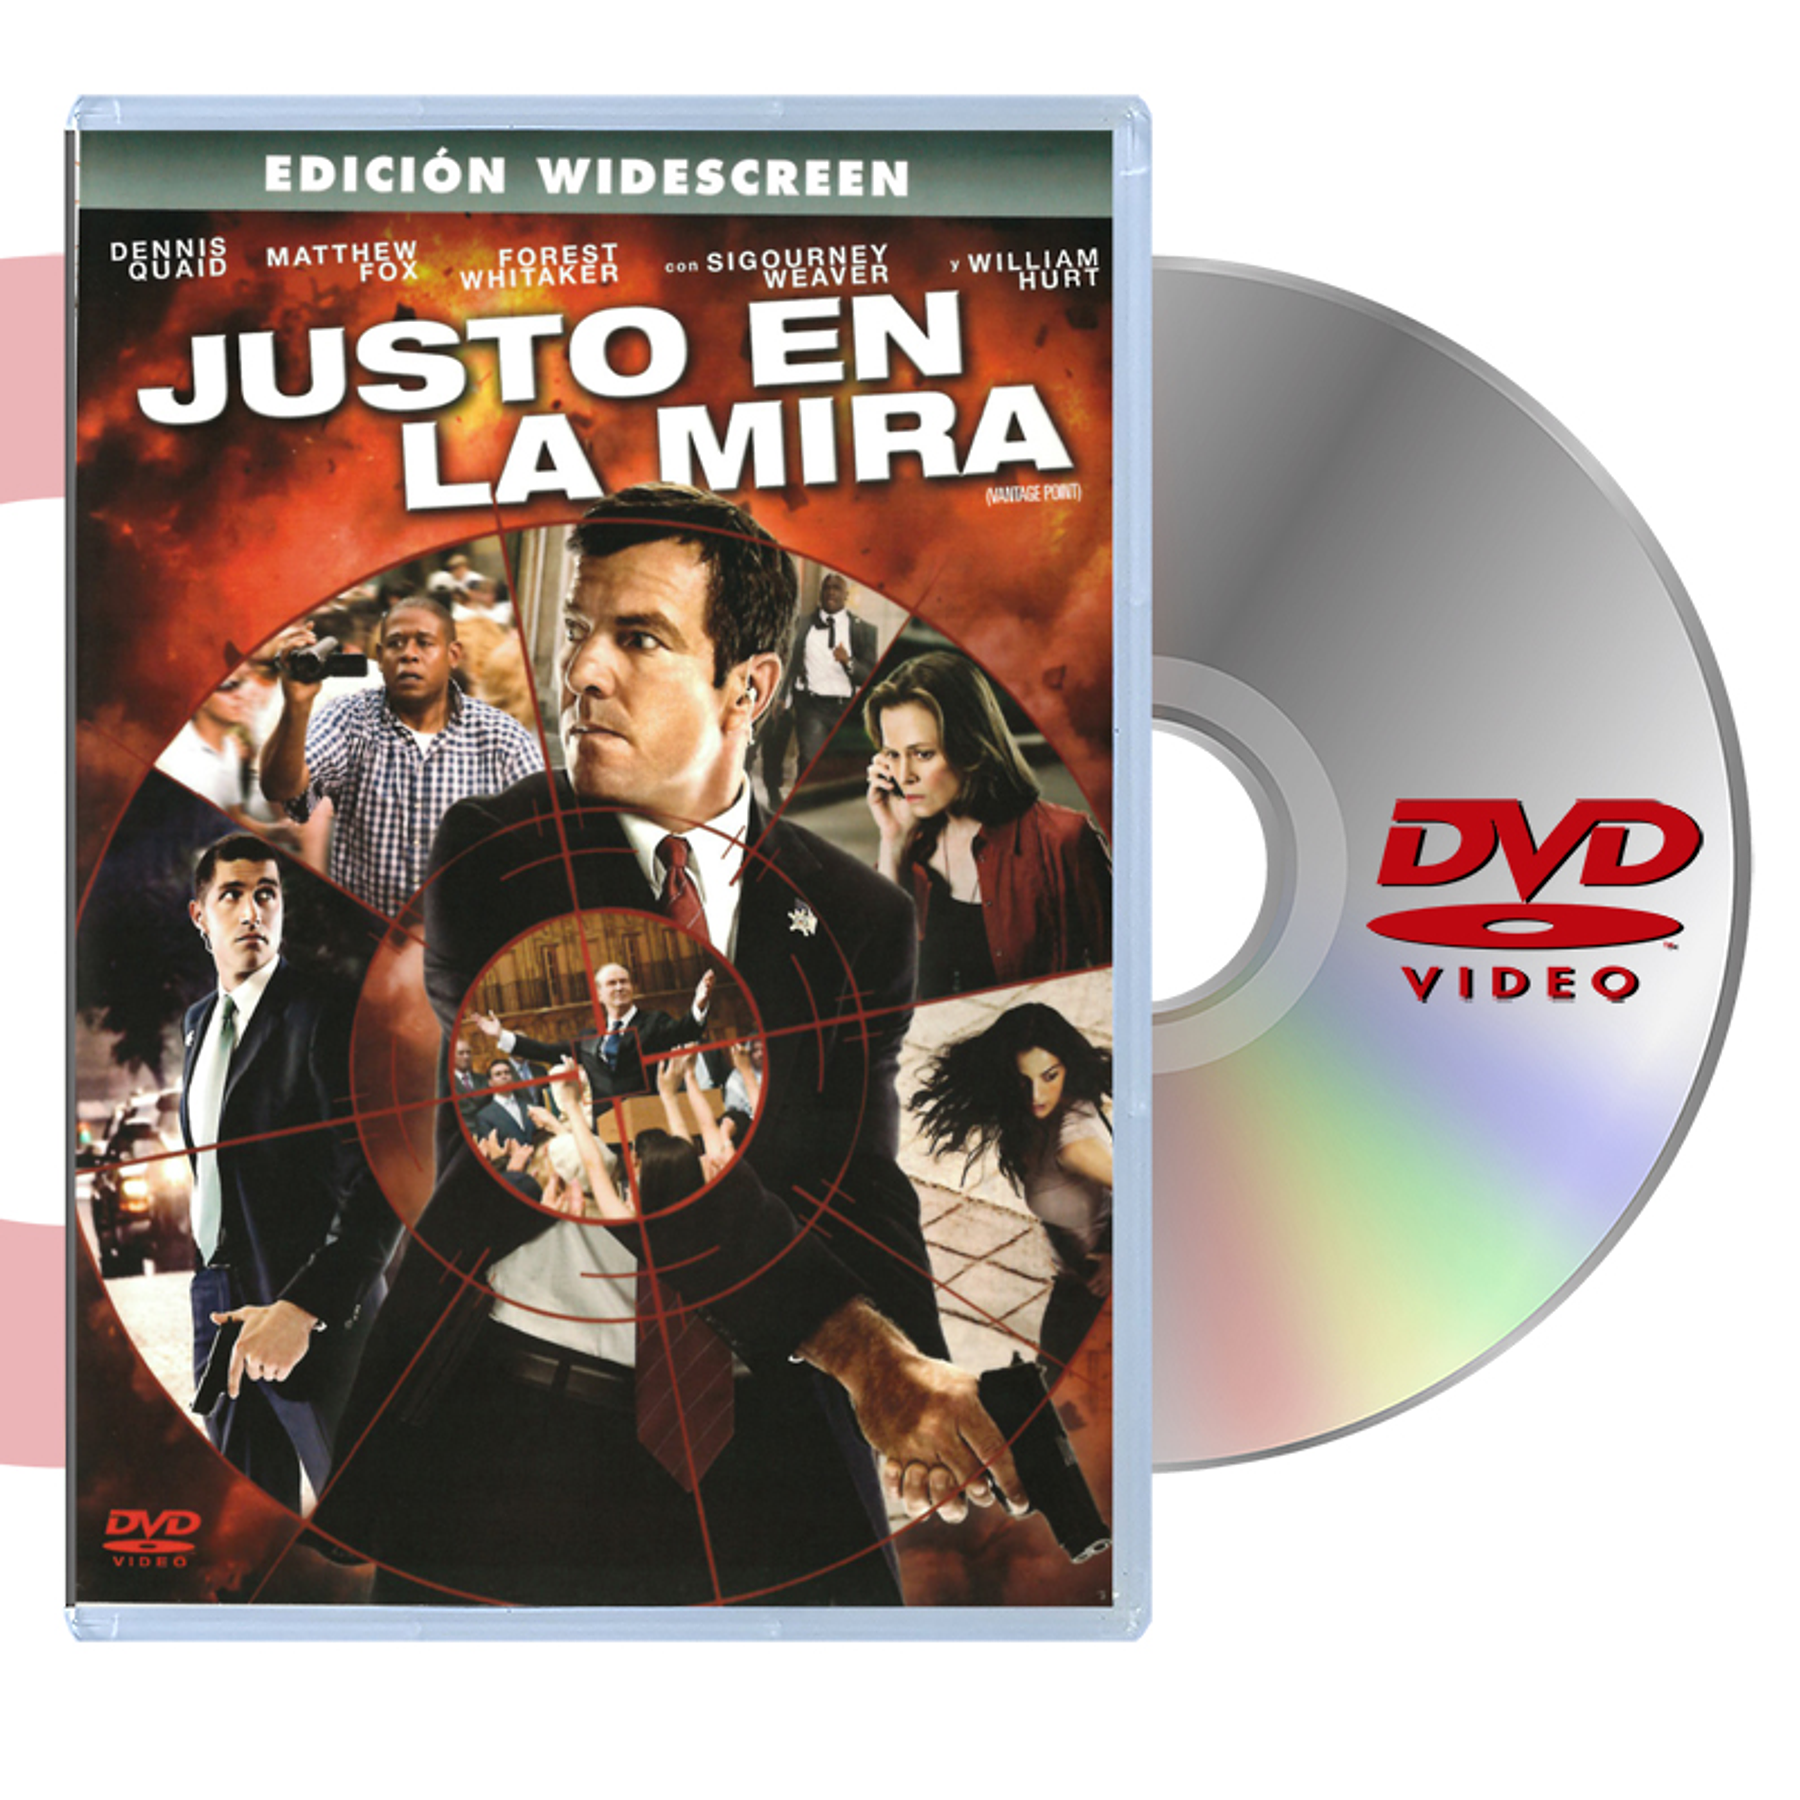 DVD JUSTO EN LA MIRA